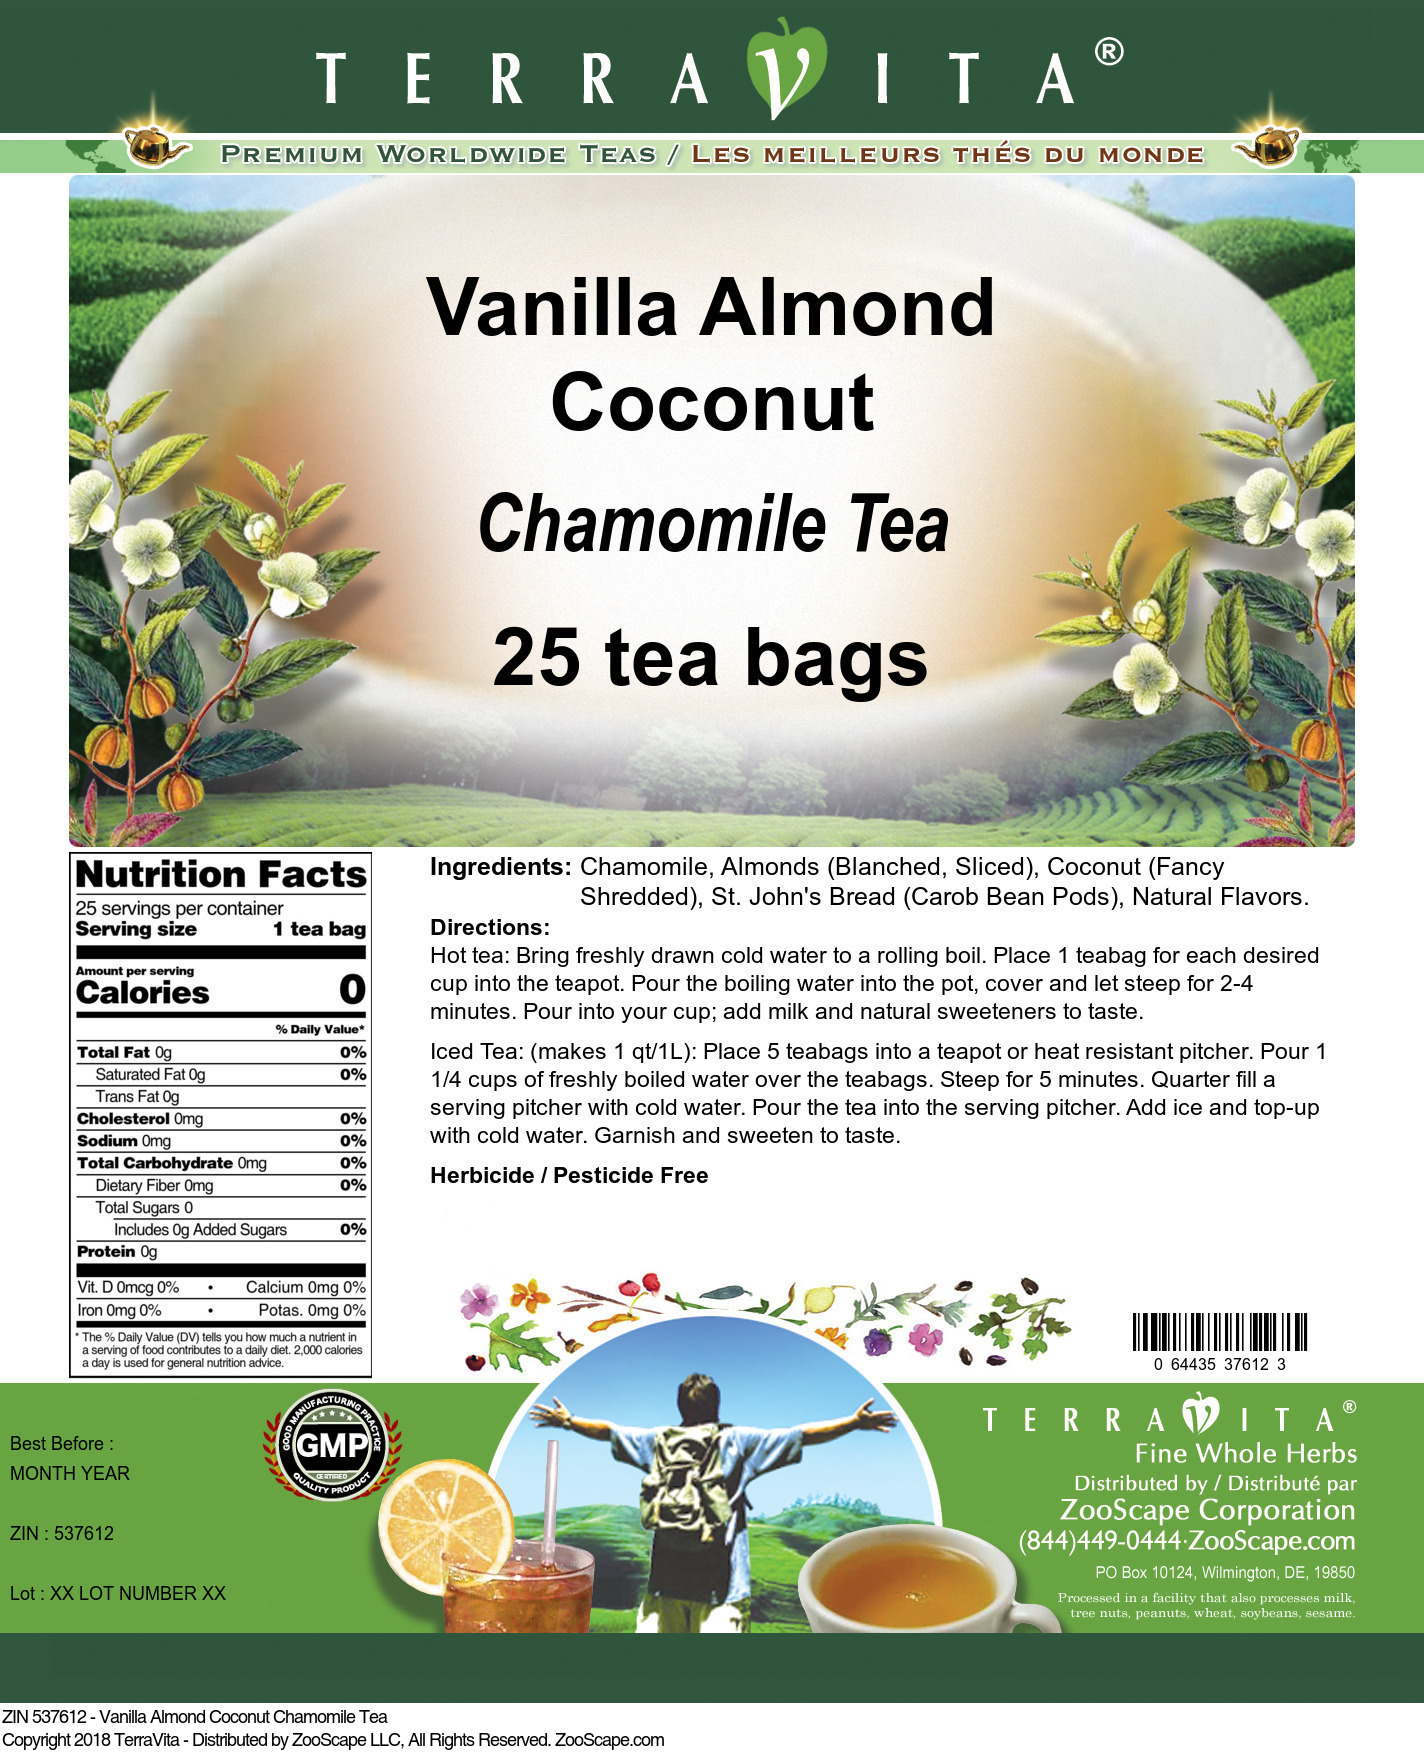 Vanilla Almond Coconut Chamomile Tea - Label